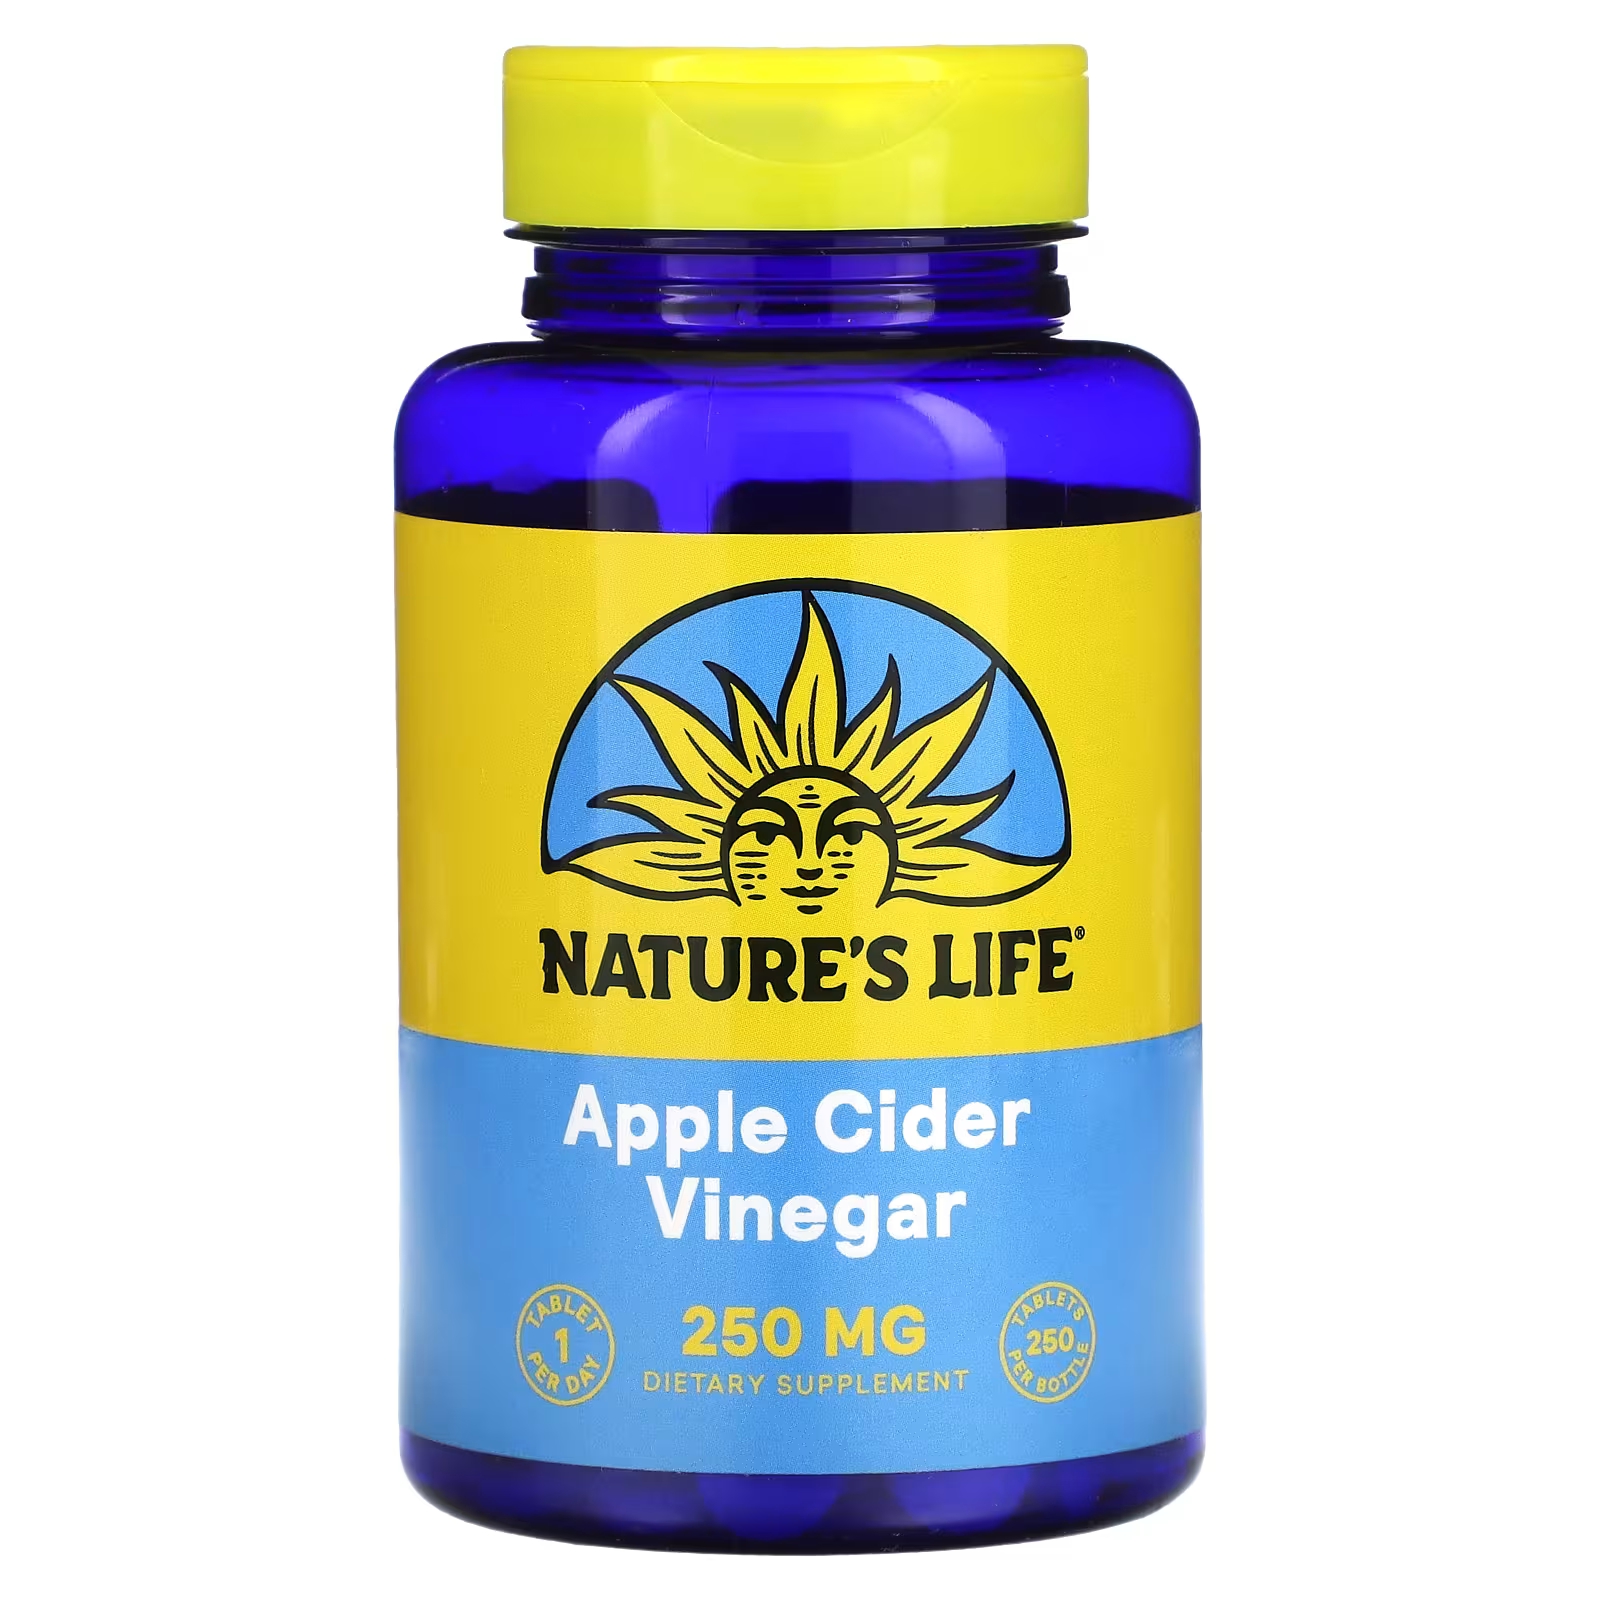 Пищевая добавка Nature's Life Apple Cider Vinegar 250 мг emergen c яблочный уксус яблочный 18 пакетиков по 9 8 г 0 35 унции